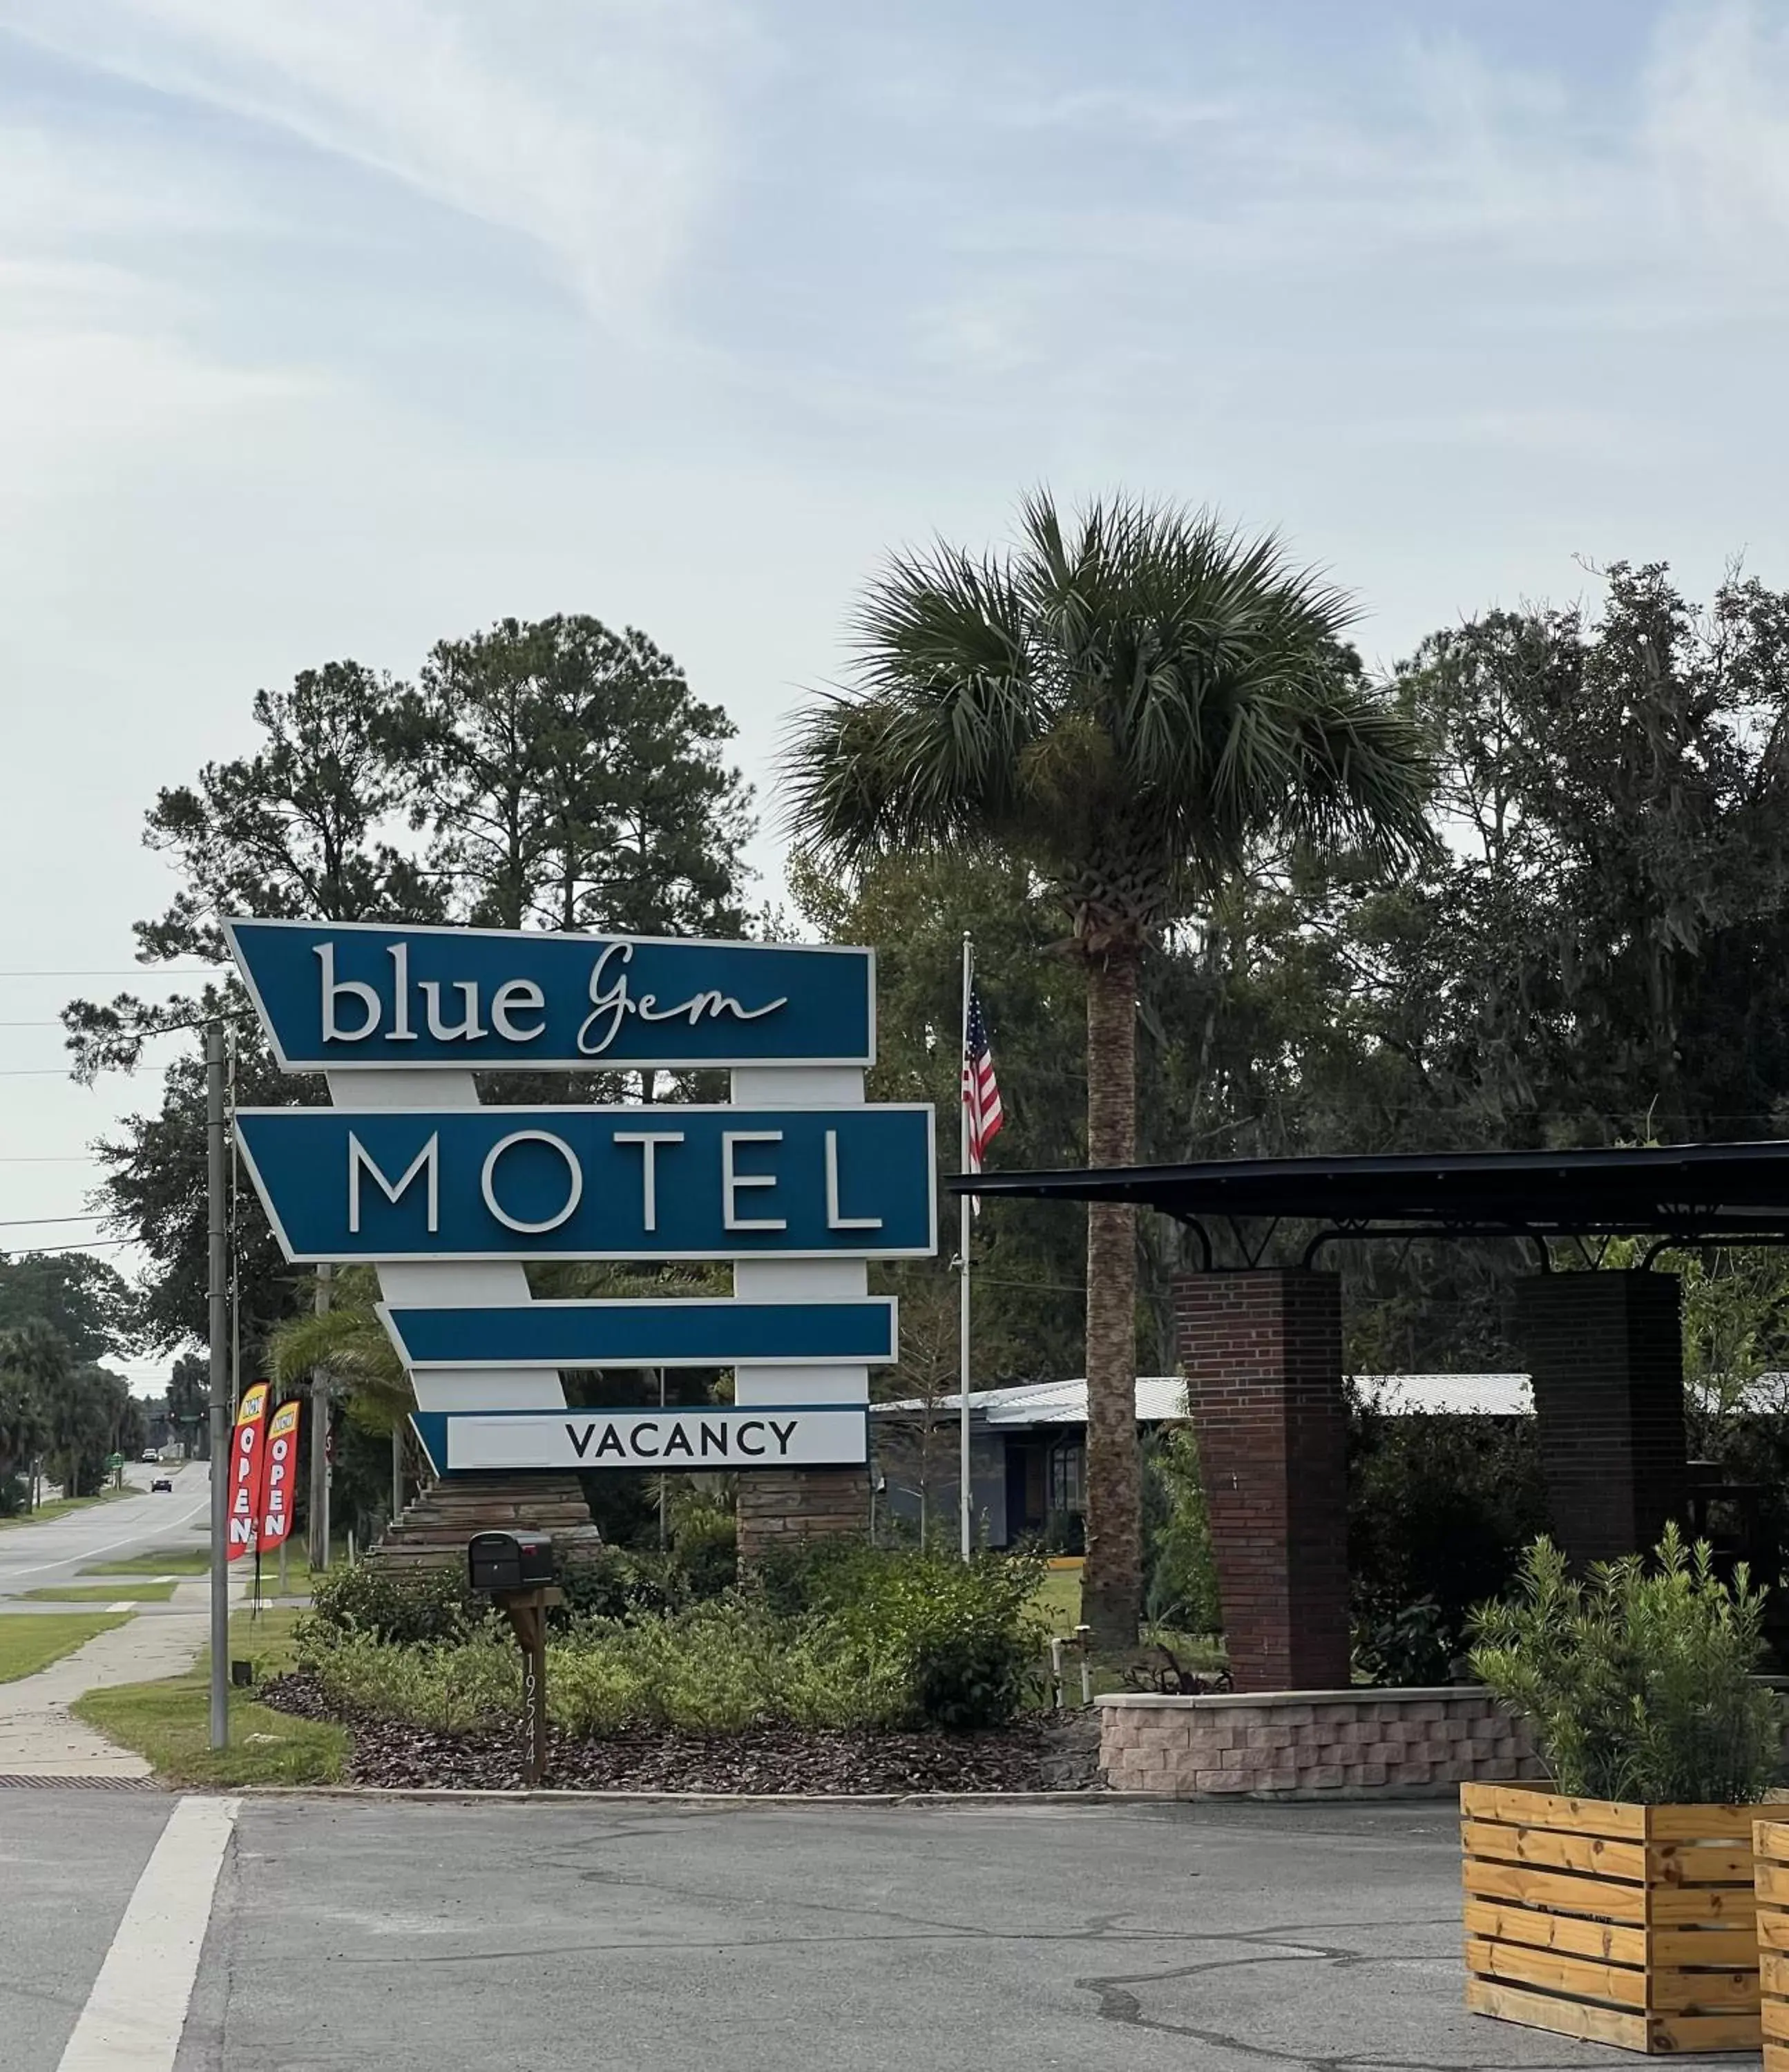 Property logo or sign in BlueGem Motel